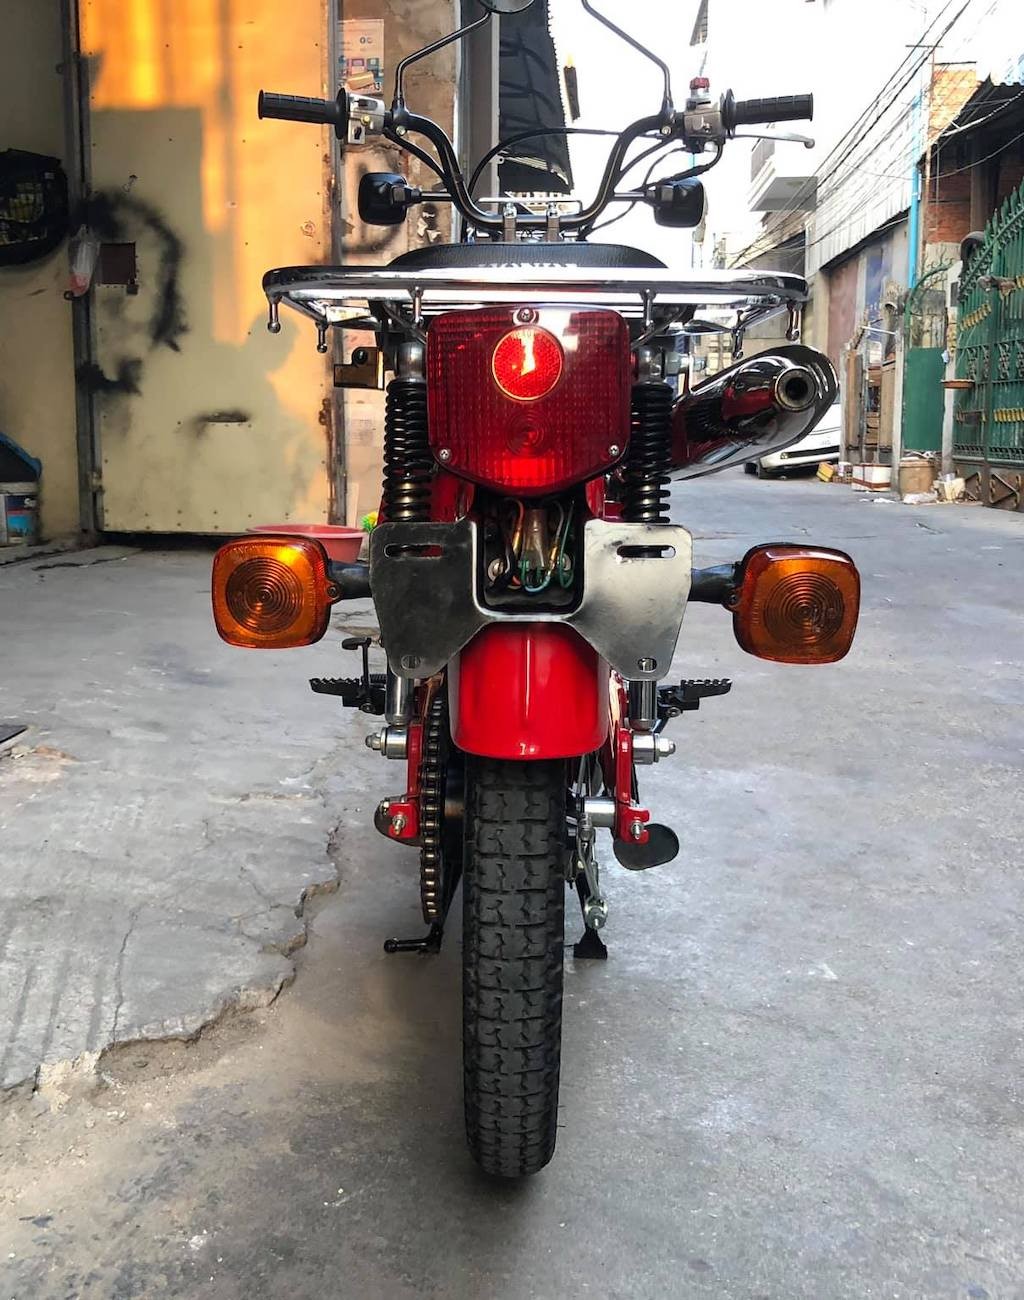 “Sốc” với Honda Super Cub địa hình đời cũ CT110 Trail được “thét giá” trăm triệu đồng tại Việt Nam ảnh 17